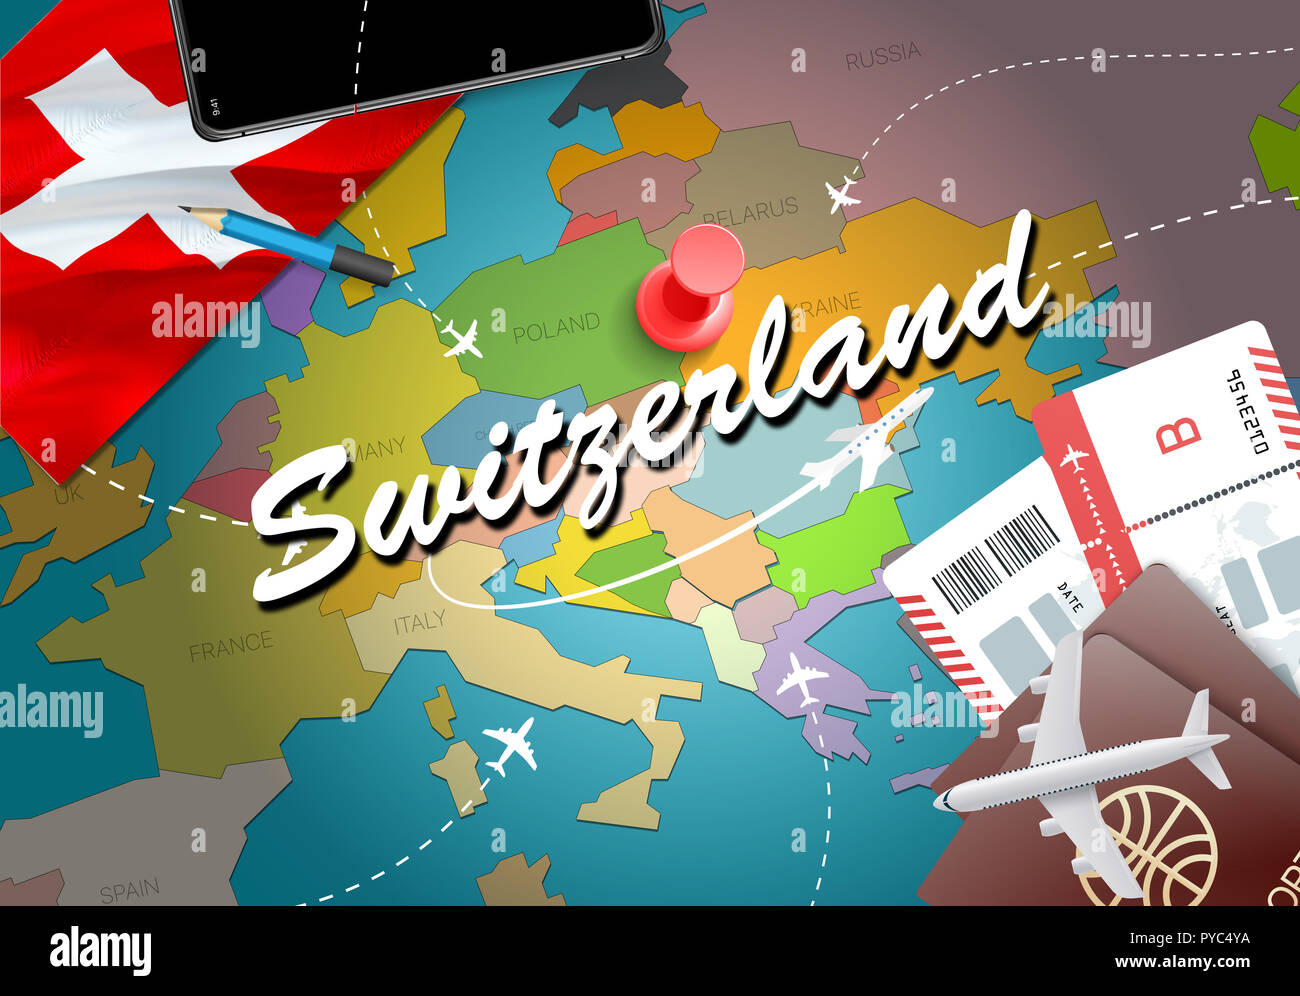 Switzerland Travel Concept Map Hintergrund mit Flugzeugen, Tickets. Die  Schweiz besuchen Reise und Tourismus Ziel Konzept. Schweiz Flagge auf der  Karte. Plan Stockfotografie - Alamy